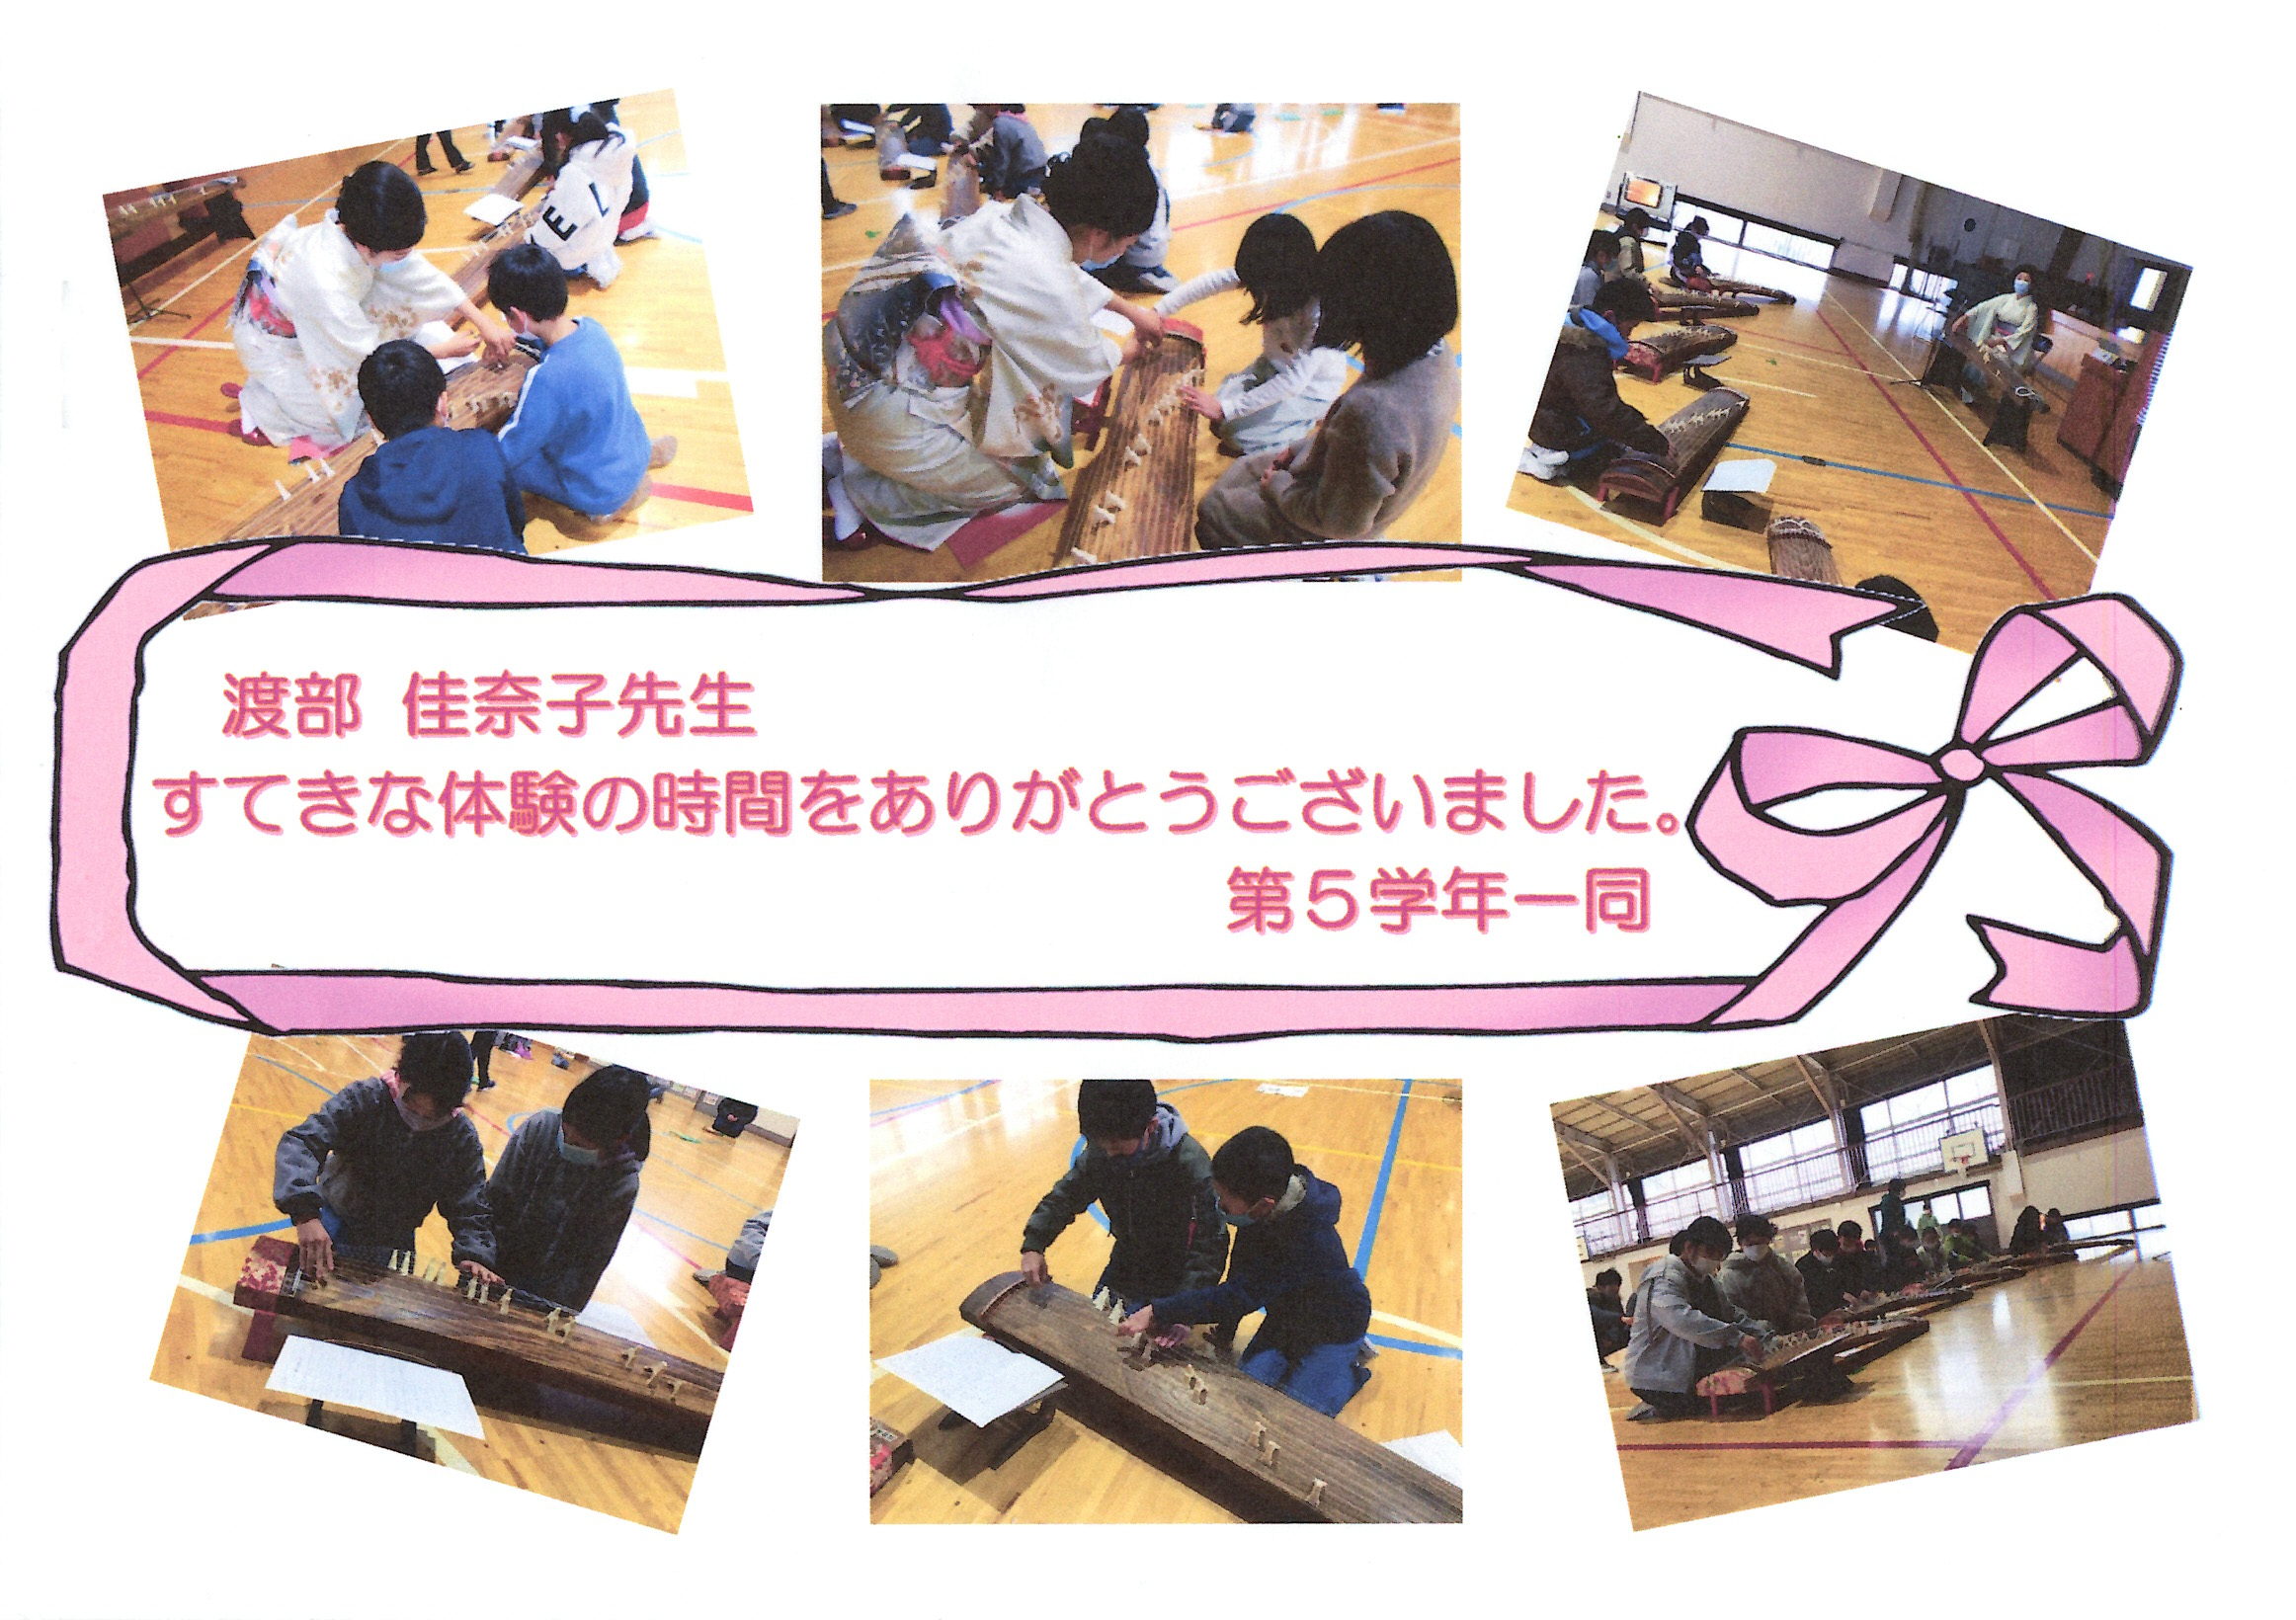 行徳小学校で箏体験授業を行った渡部佳奈子に寄せられた質問